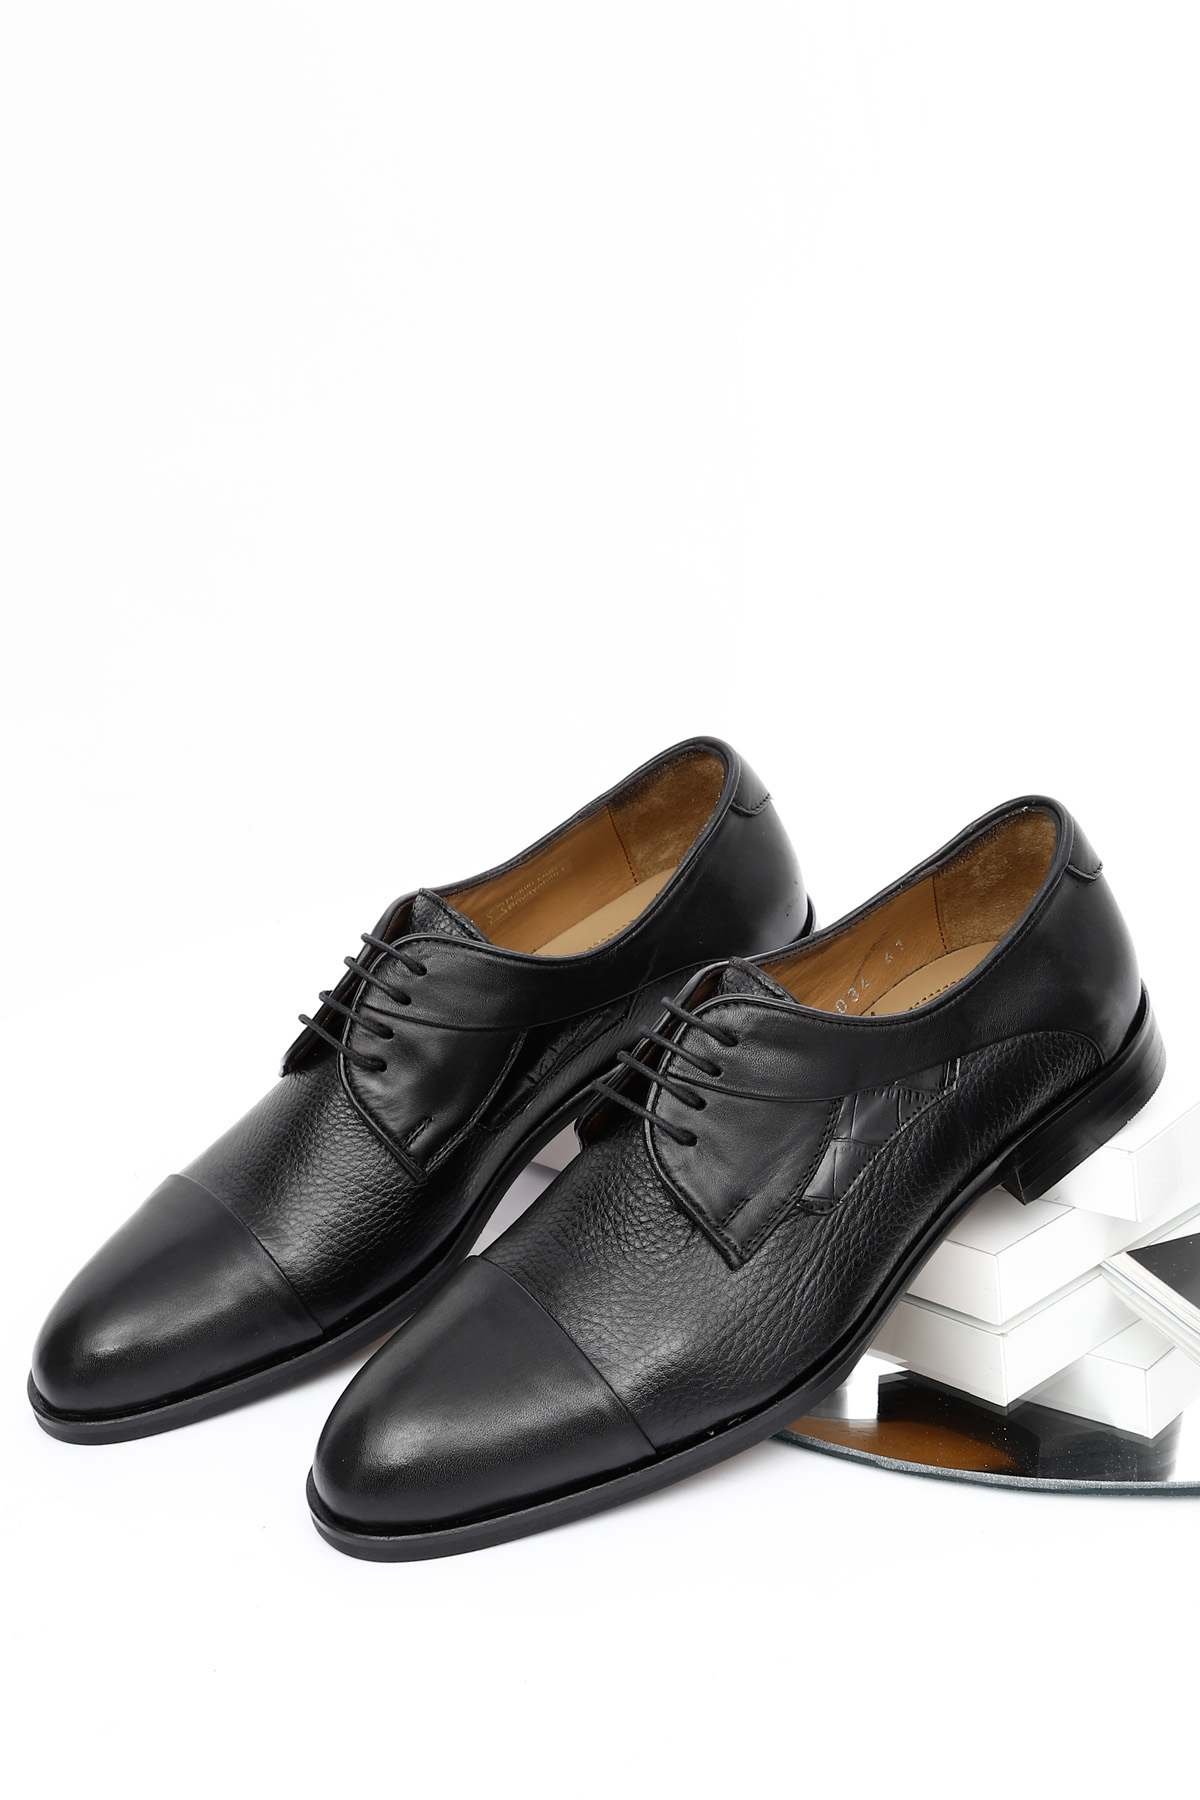 Gön Platinum Hakiki Deri Bağcıklı Klasik Erkek Ayakkabı 34034 | Gön Deri